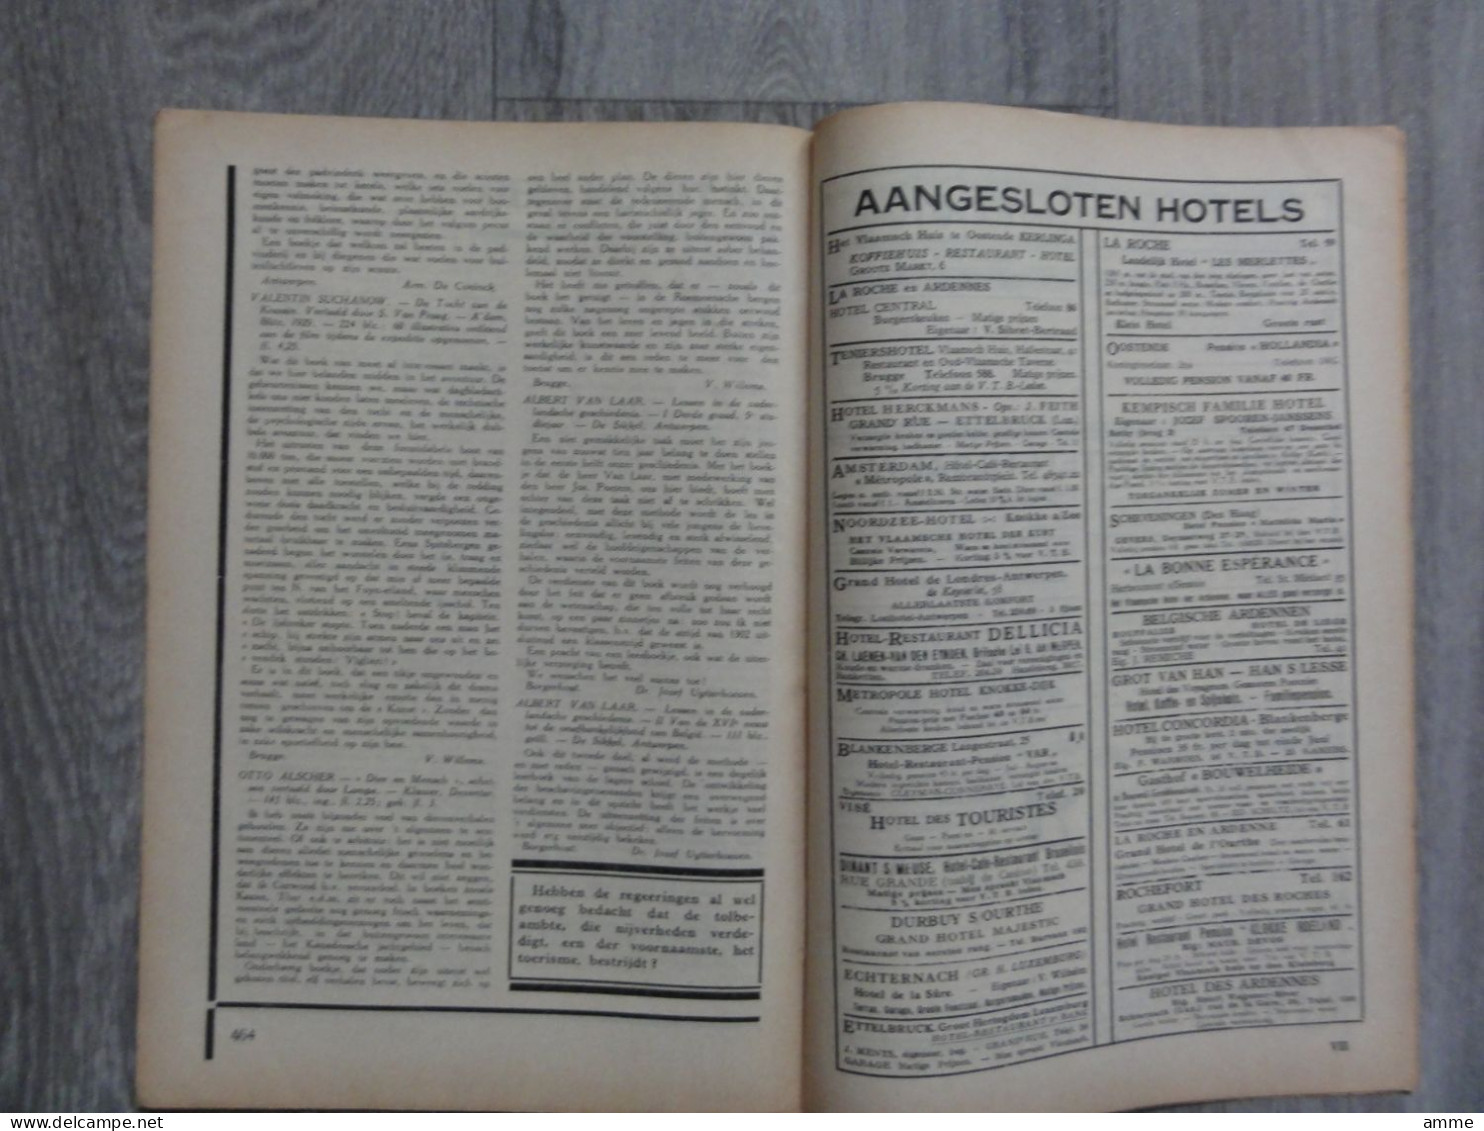 Toerisme  *  (tijdschrift n° 18 - sept. 1930)  Roeselare - Halle - Brugge - Utrecht - - publiciteit hotels